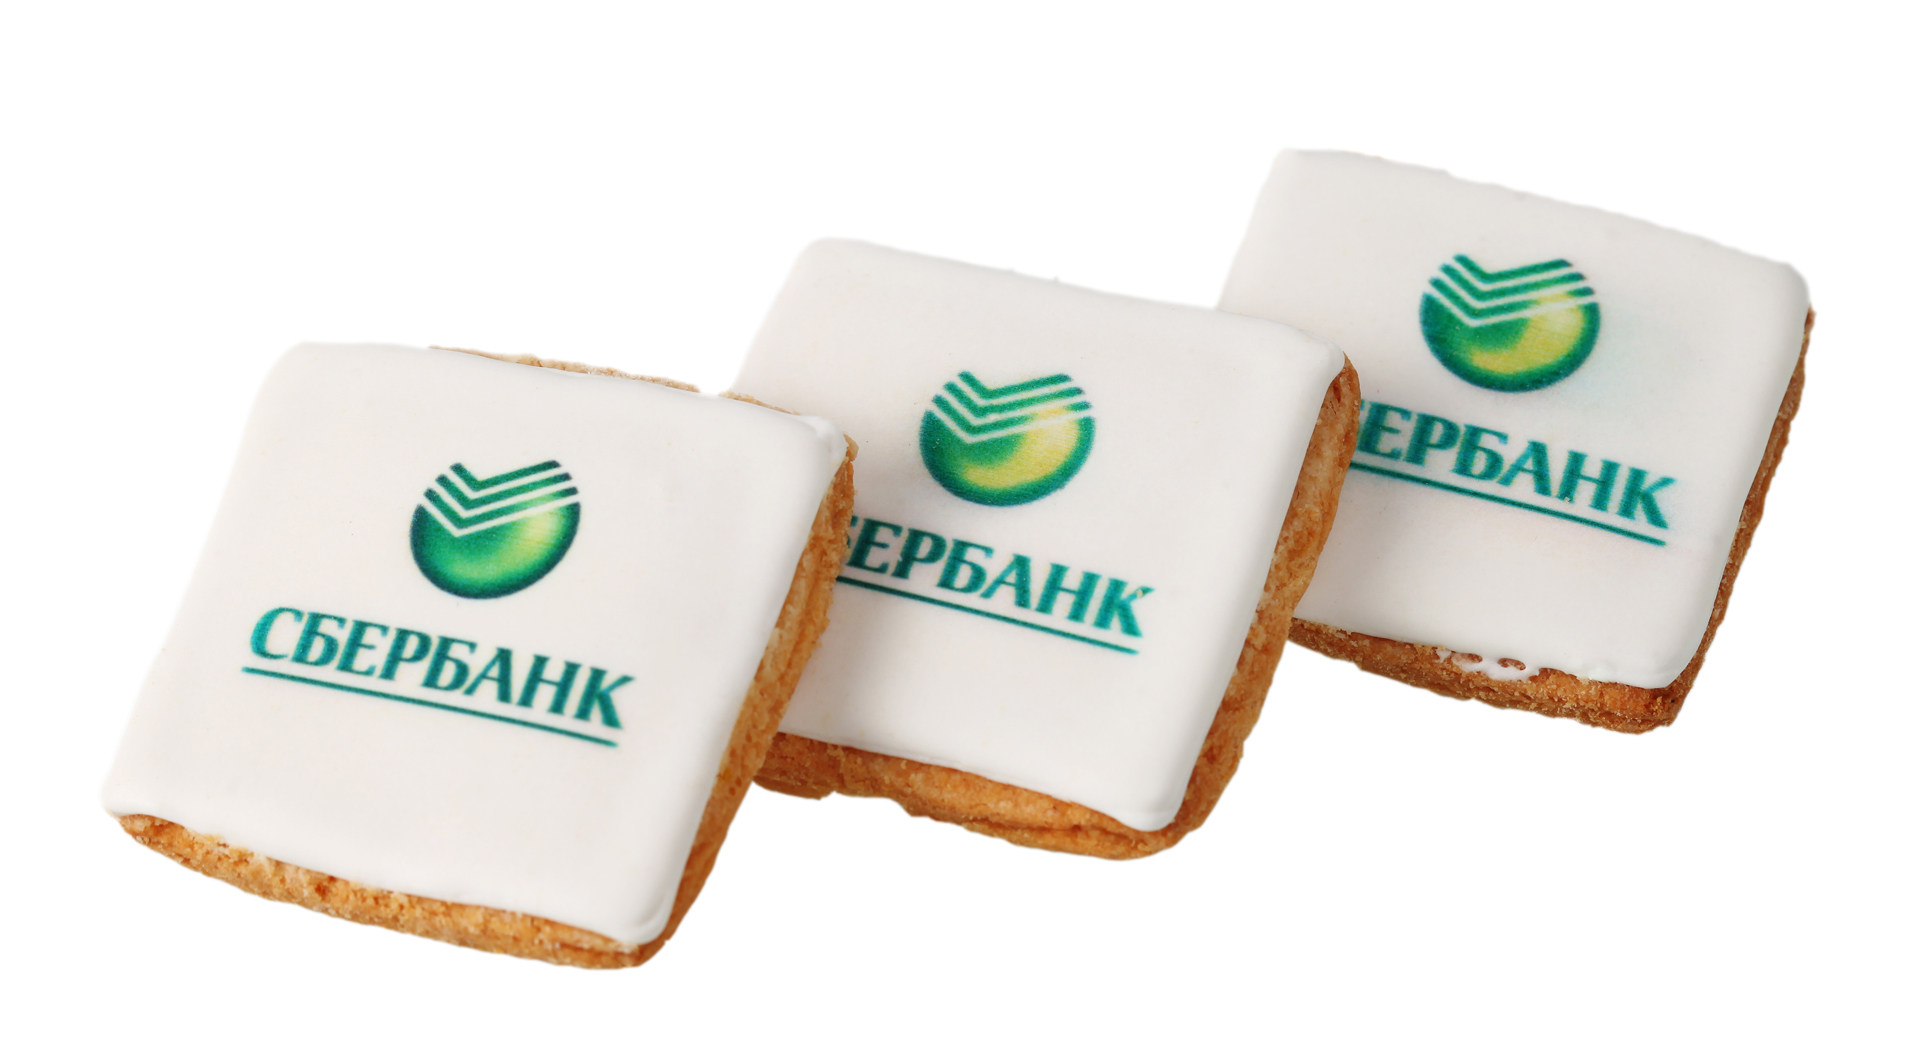 Корпоративные подарки от Сбербанка - макаруны и упаковка с логотипом